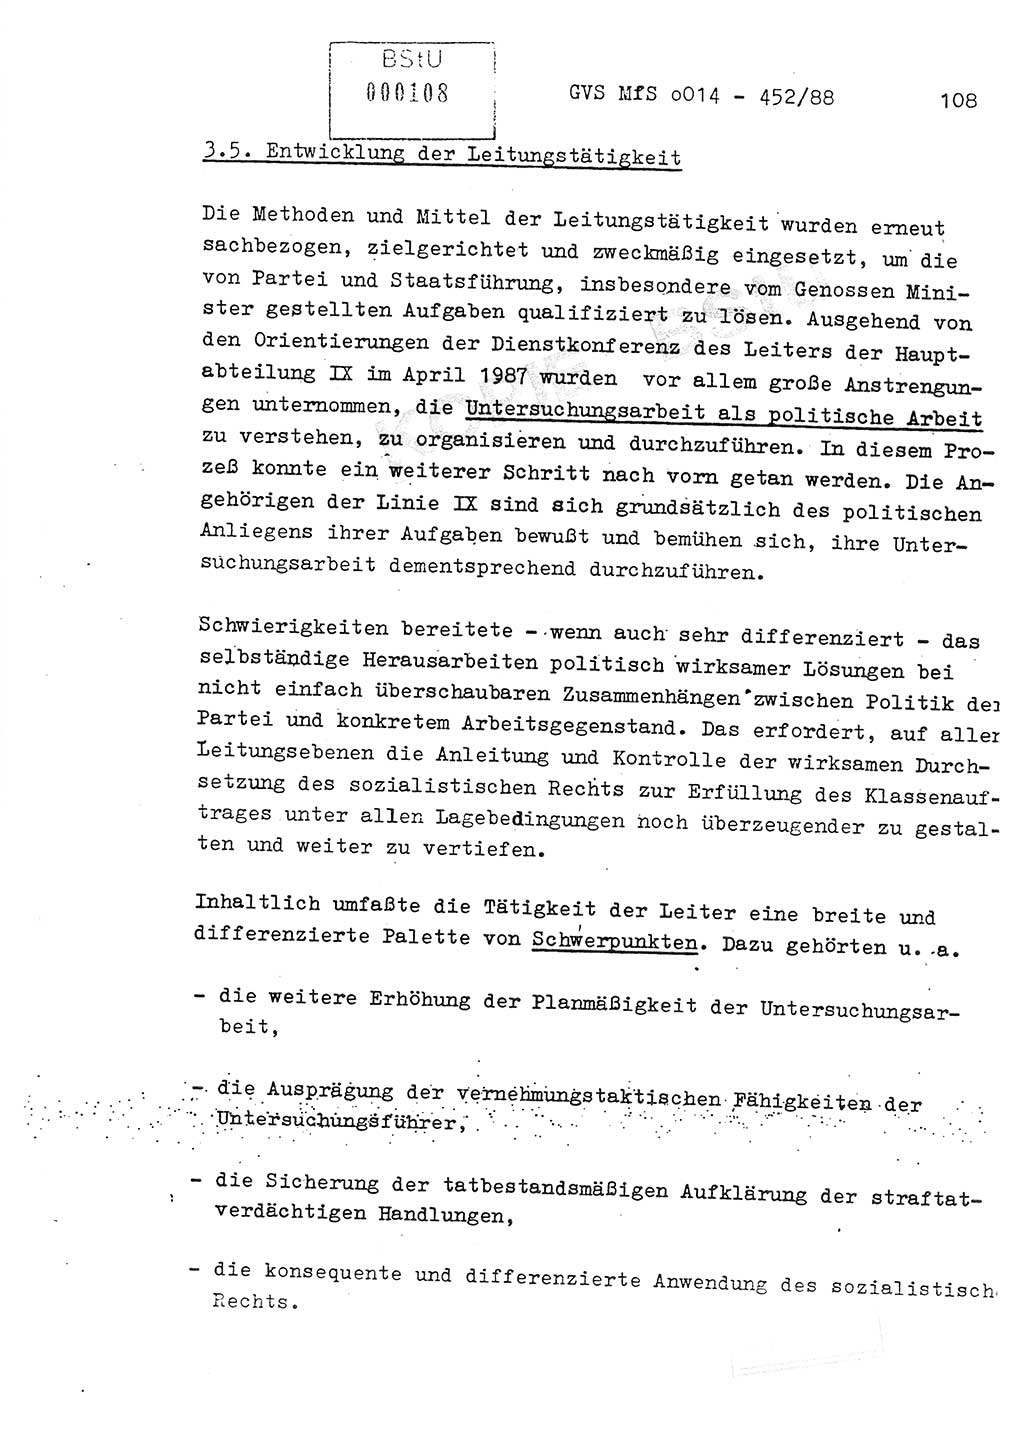 Jahresbericht der Hauptabteilung (HA) Ⅸ 1987, Einschätzung der Wirksamkeit der Untersuchungsarbeit im Jahre 1987, Ministerium für Staatssicherheit (MfS) der Deutschen Demokratischen Republik (DDR), Hauptabteilung Ⅸ, Geheime Verschlußsache (GVS) o014-452/88, Berlin 1988, Seite 108 (Einsch. MfS DDR HA Ⅸ GVS o014-452/88 1987, S. 108)